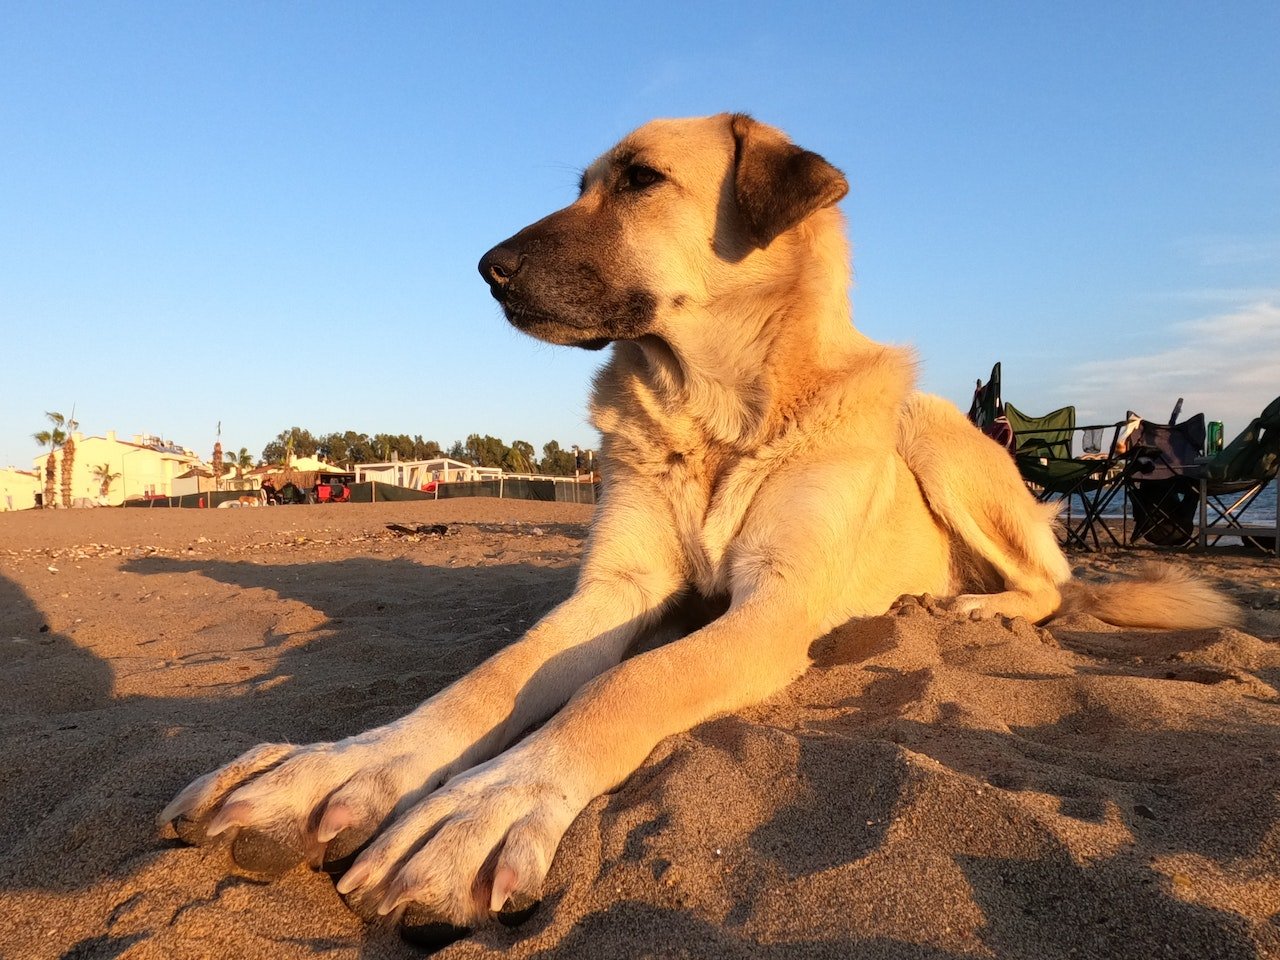 Apesr do tamanho e da mordida poderosa, são cães calmos. Foto: Engin Akyurt/Pexels